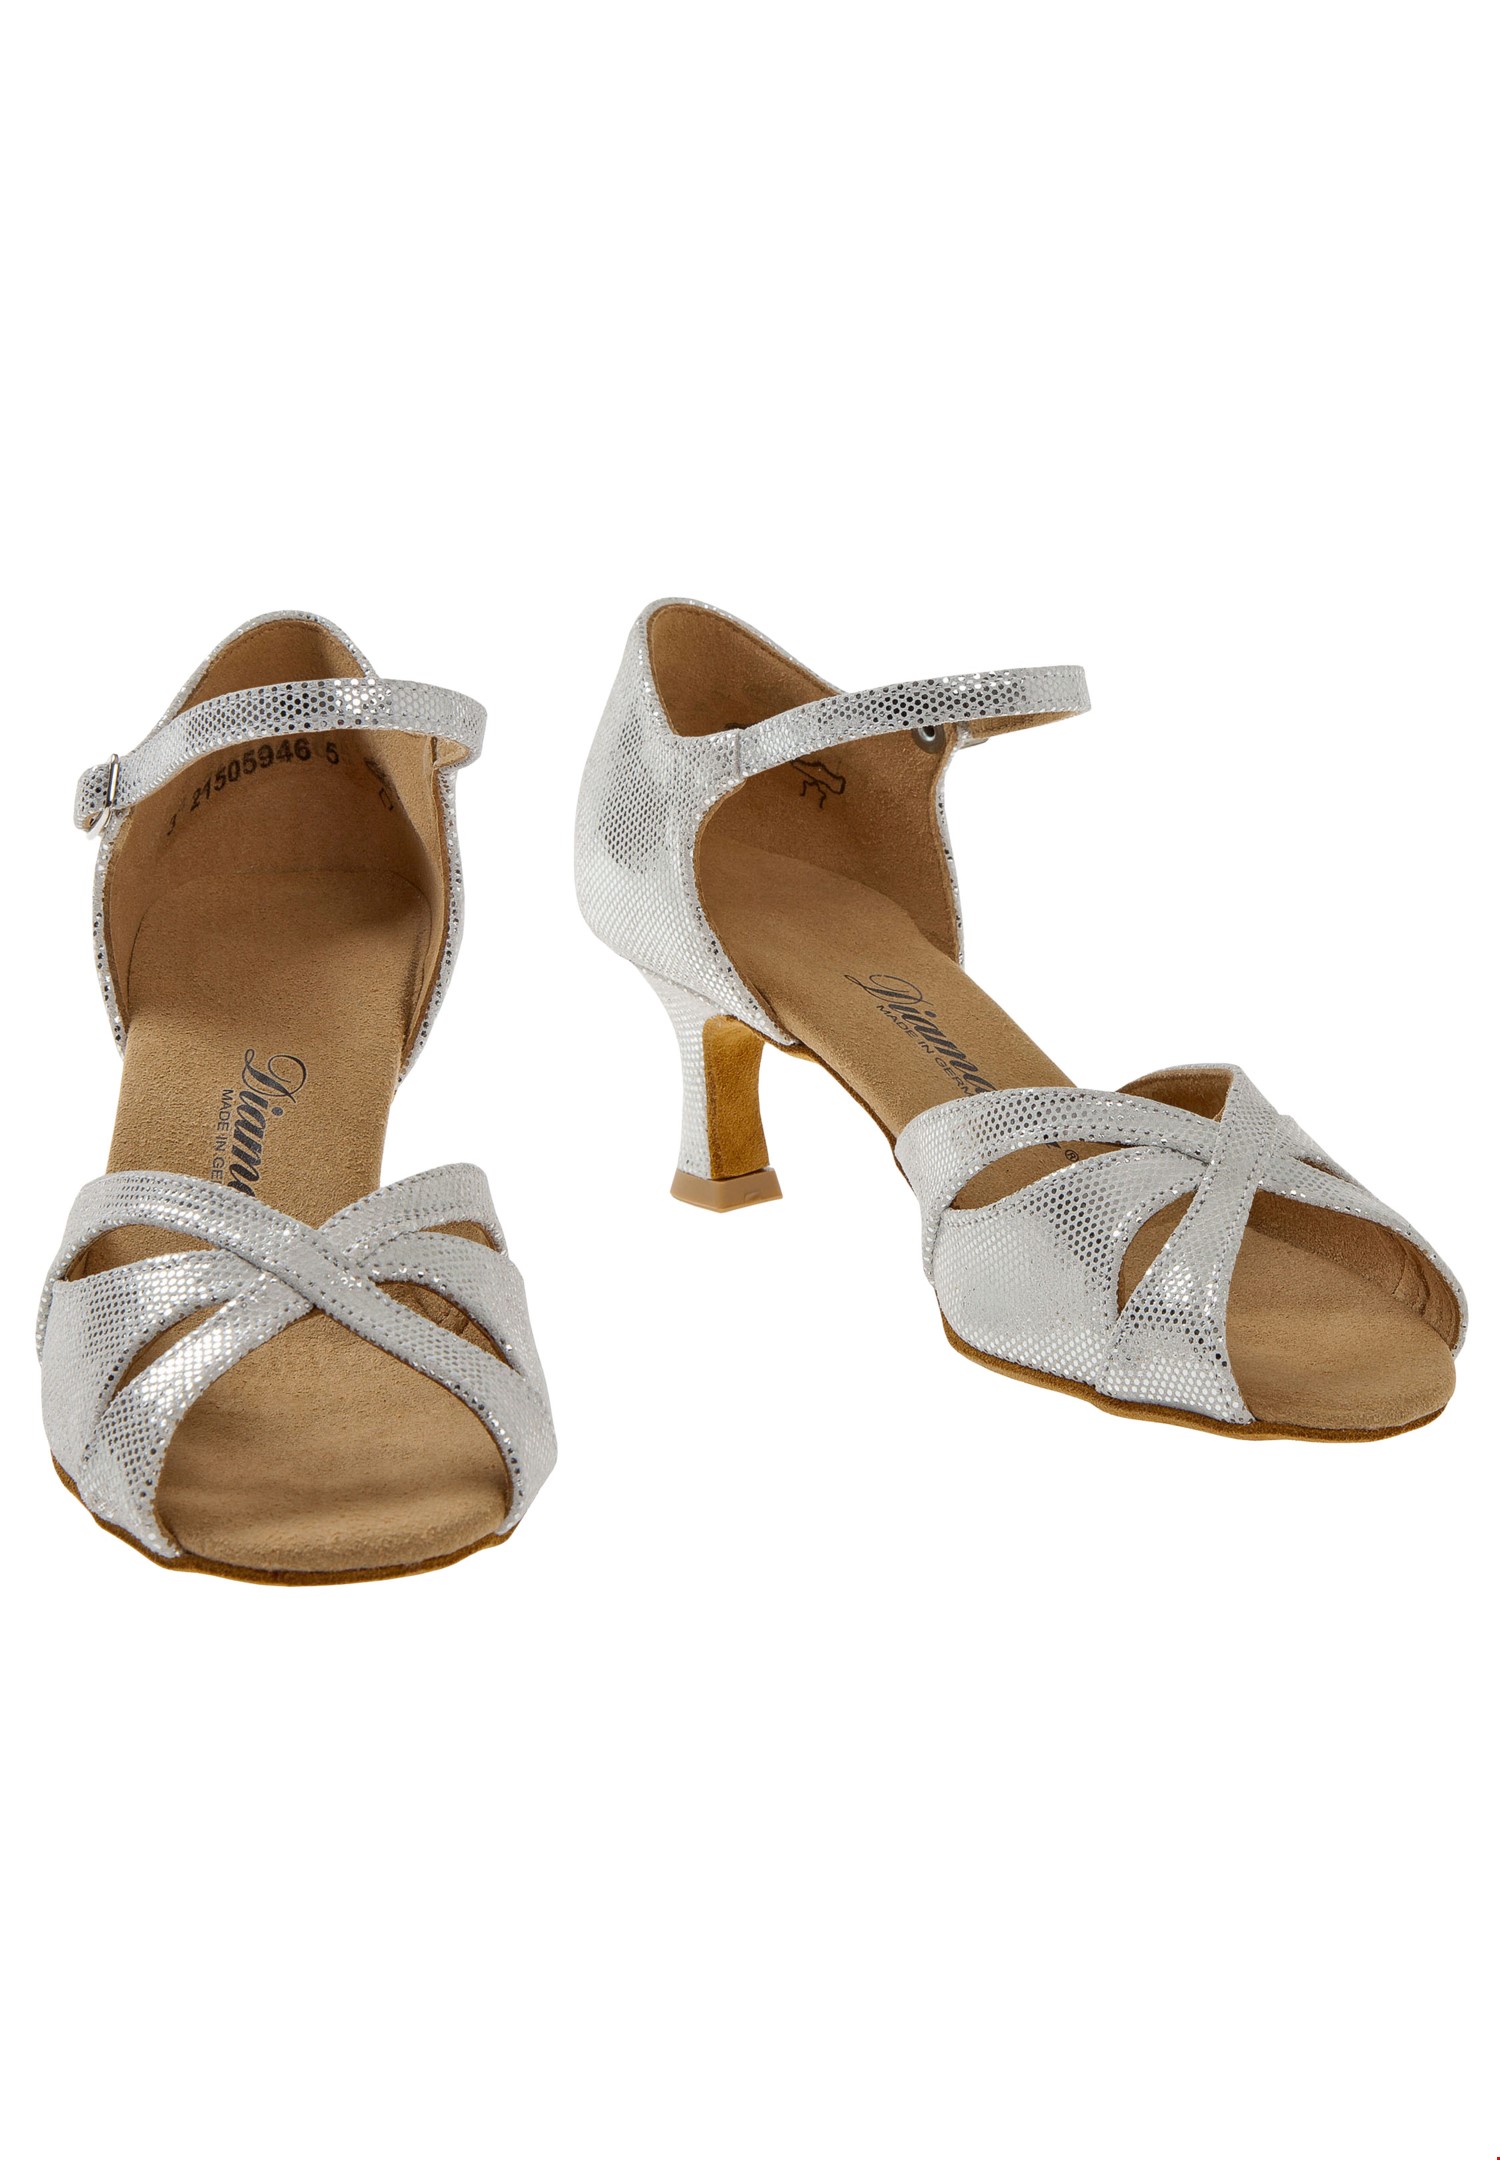 Dance sandals, Mod: LIDIA, Salsa shoes